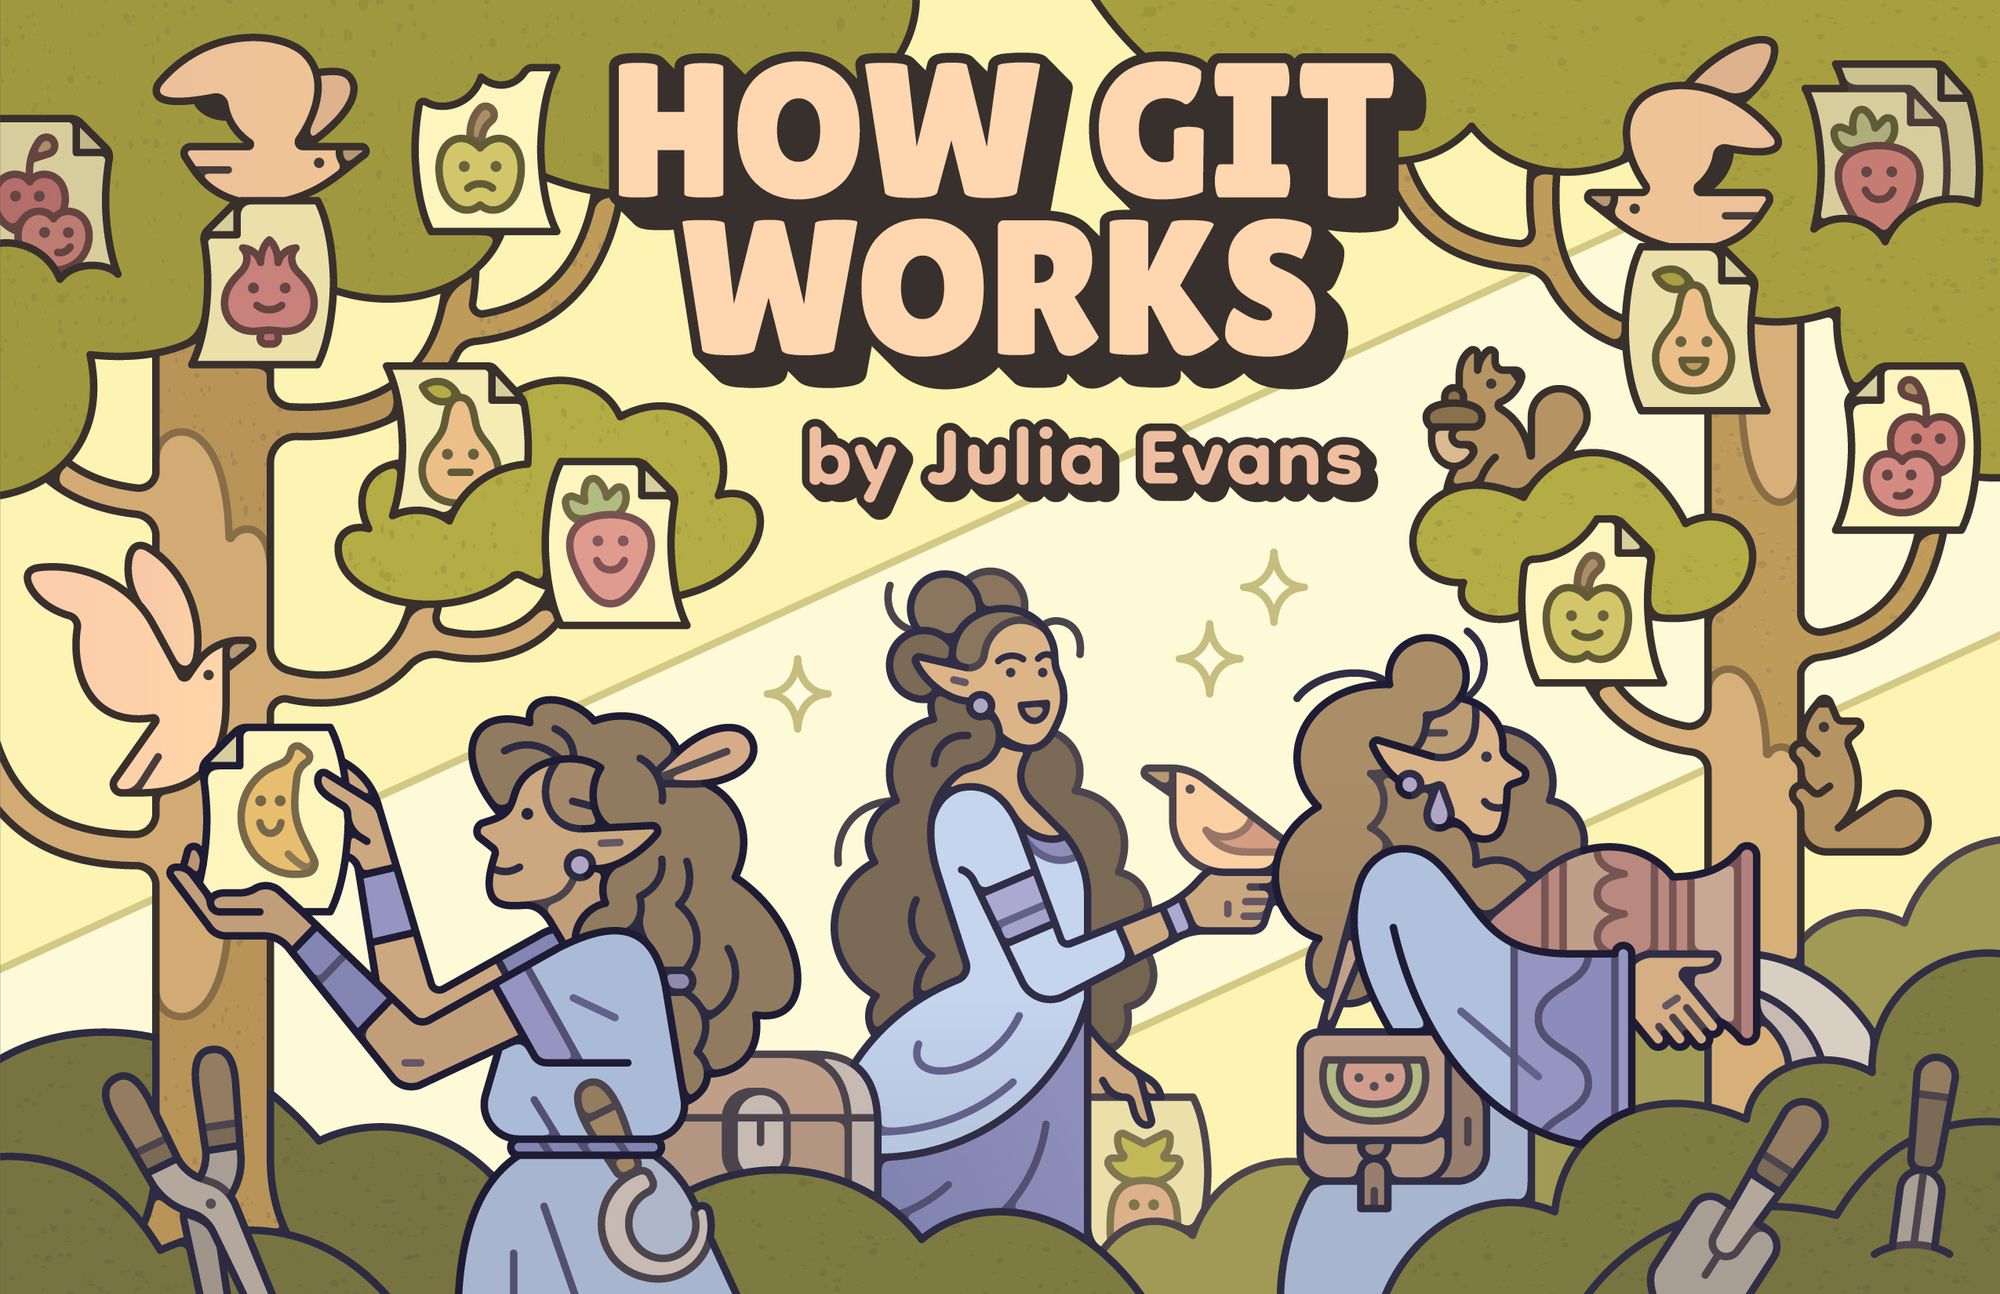 wizard zines: How Git Works